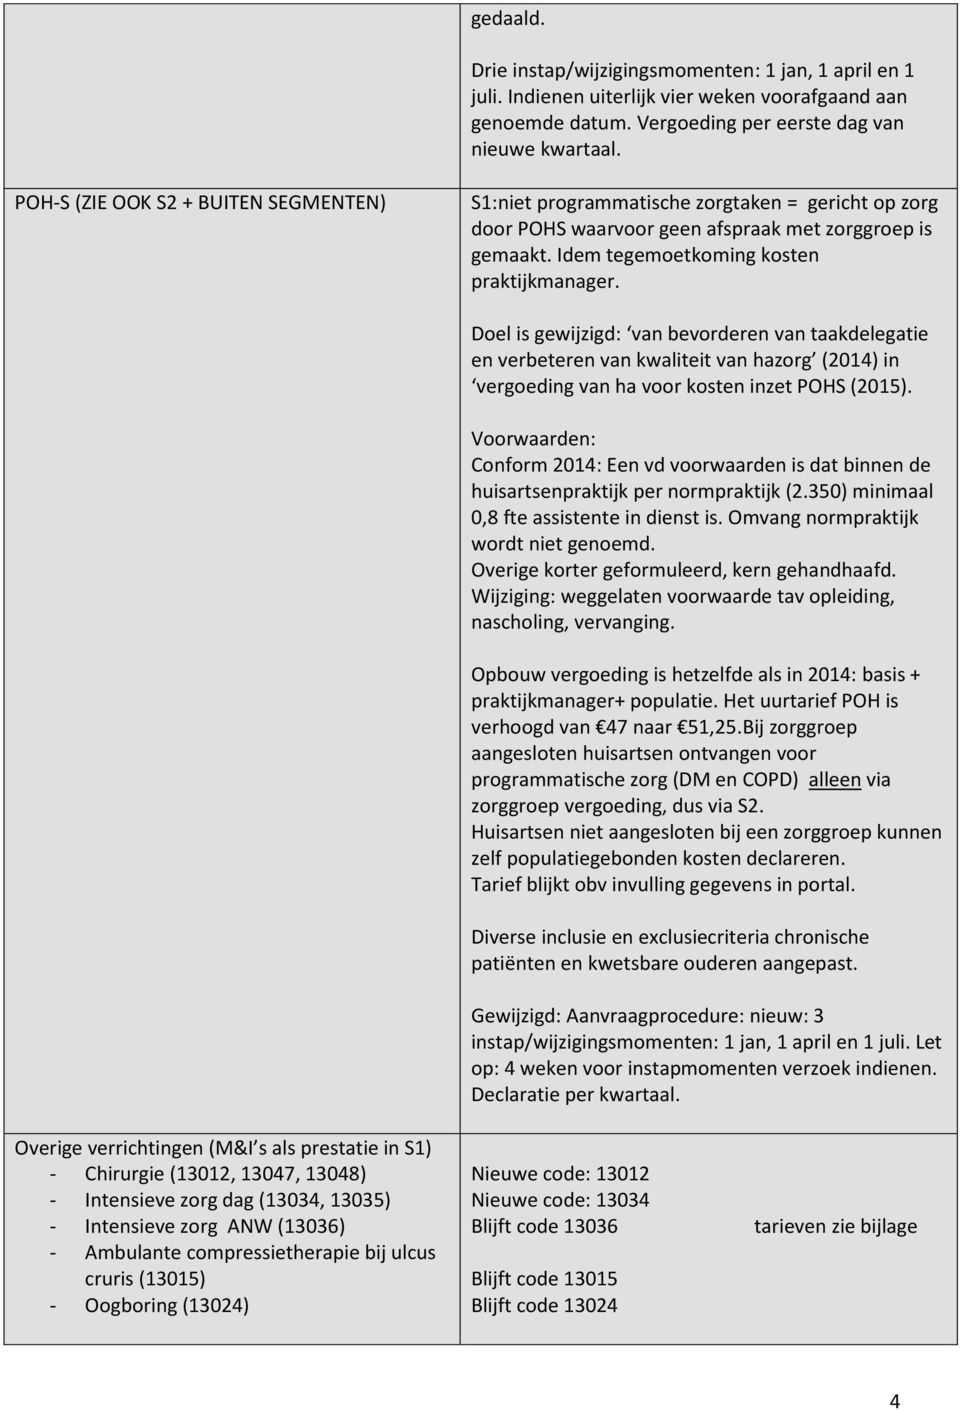 Doel is gewijzigd: van bevorderen van taakdelegatie en verbeteren van kwaliteit van hazorg (2014) in vergoeding van ha voor kosten inzet POHS (2015).